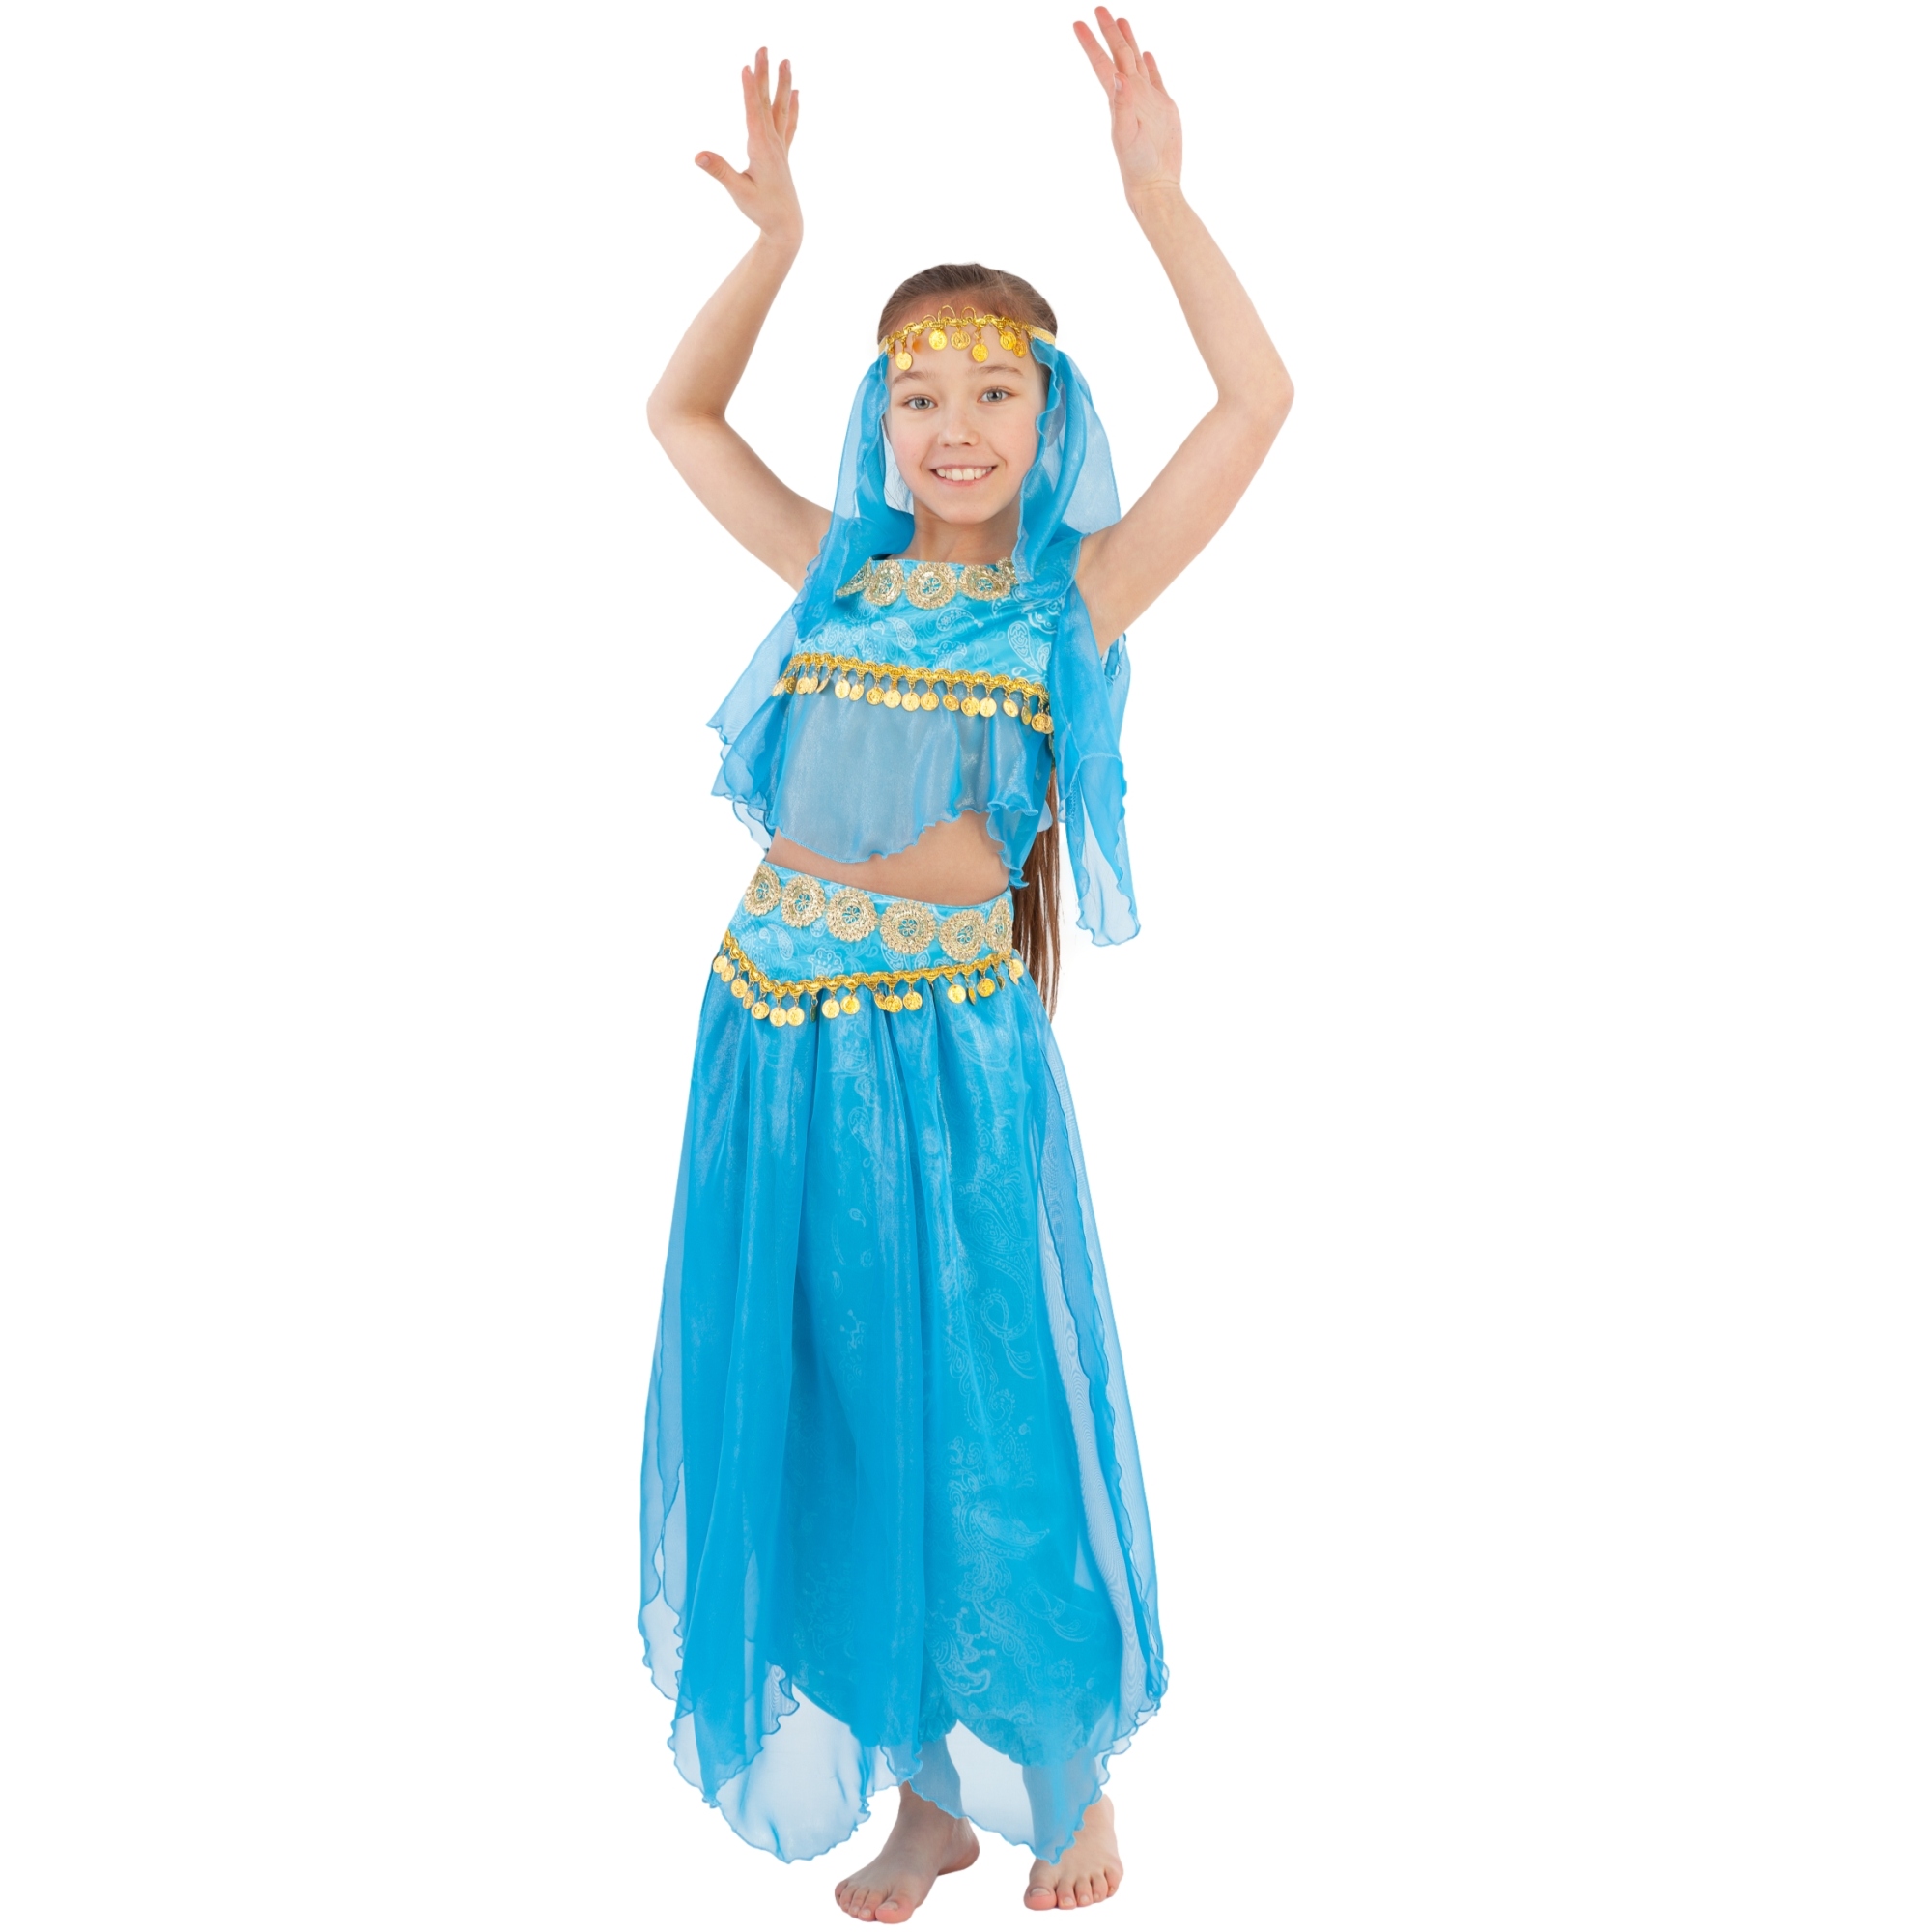 Карнавальный костюм "Восточная красавица" (топ, шаровары, манисты на голову, пояс) размер 122-64